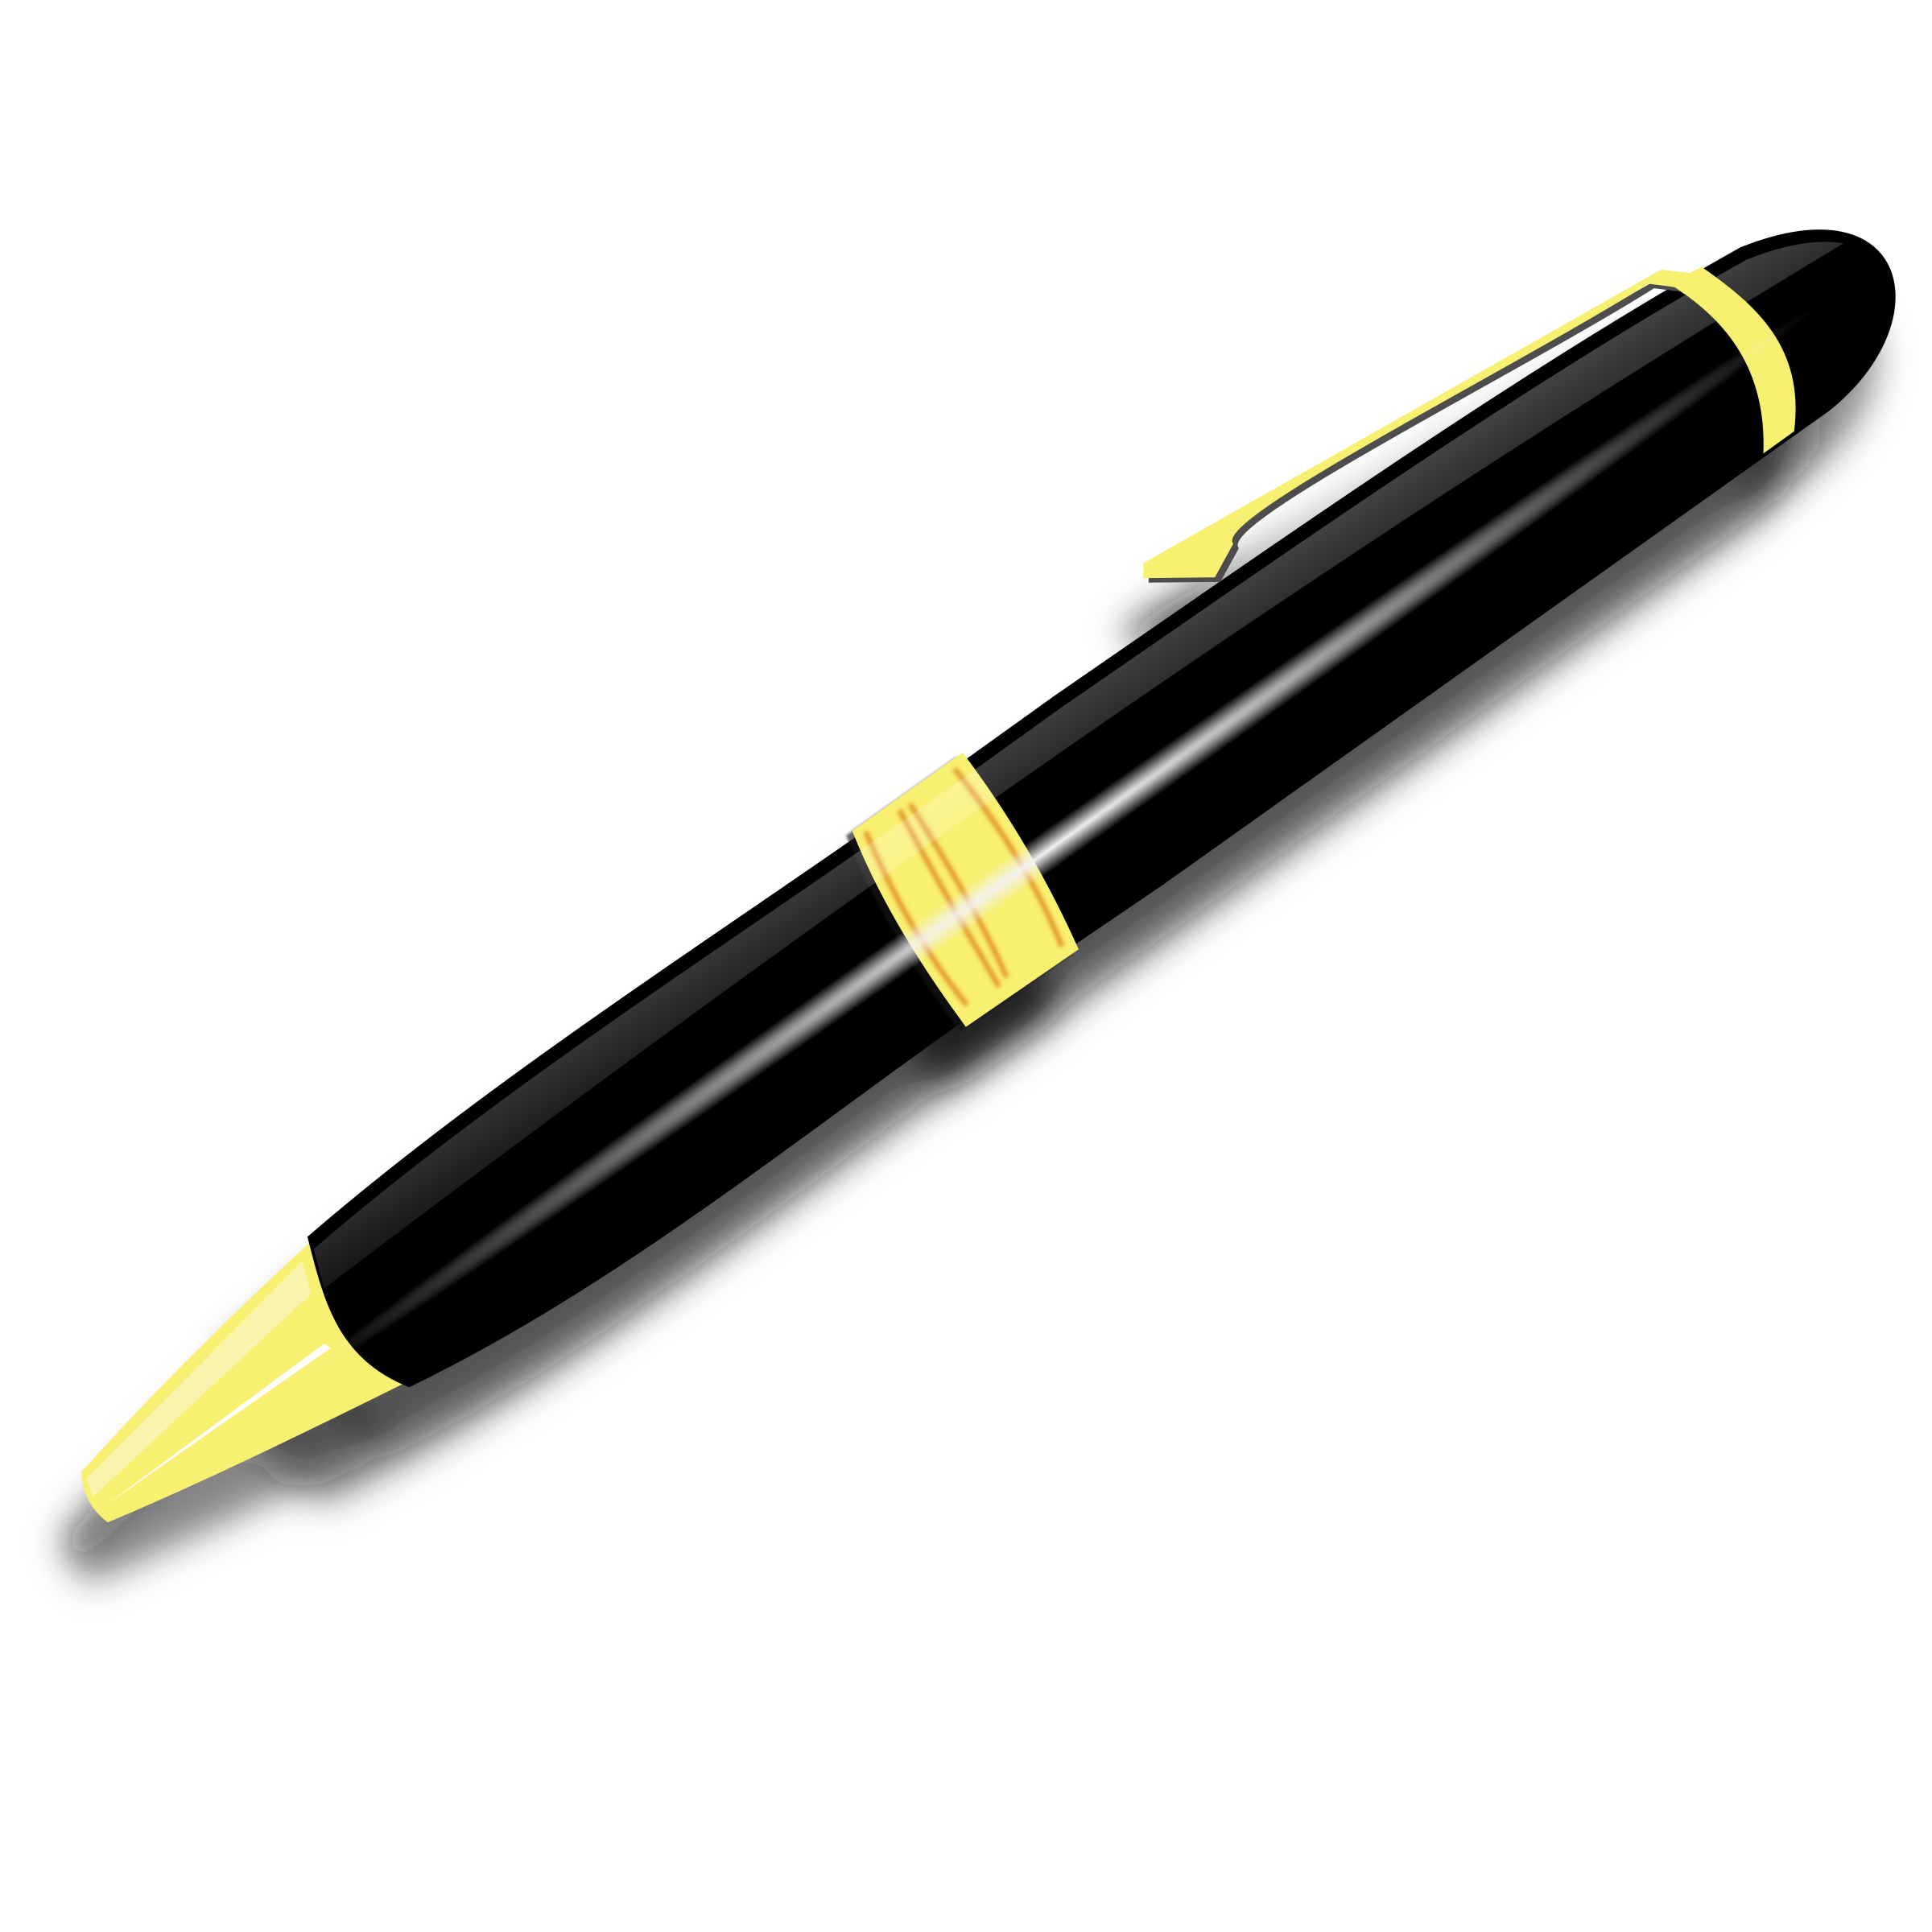 Pen clipart png - ClipartFox